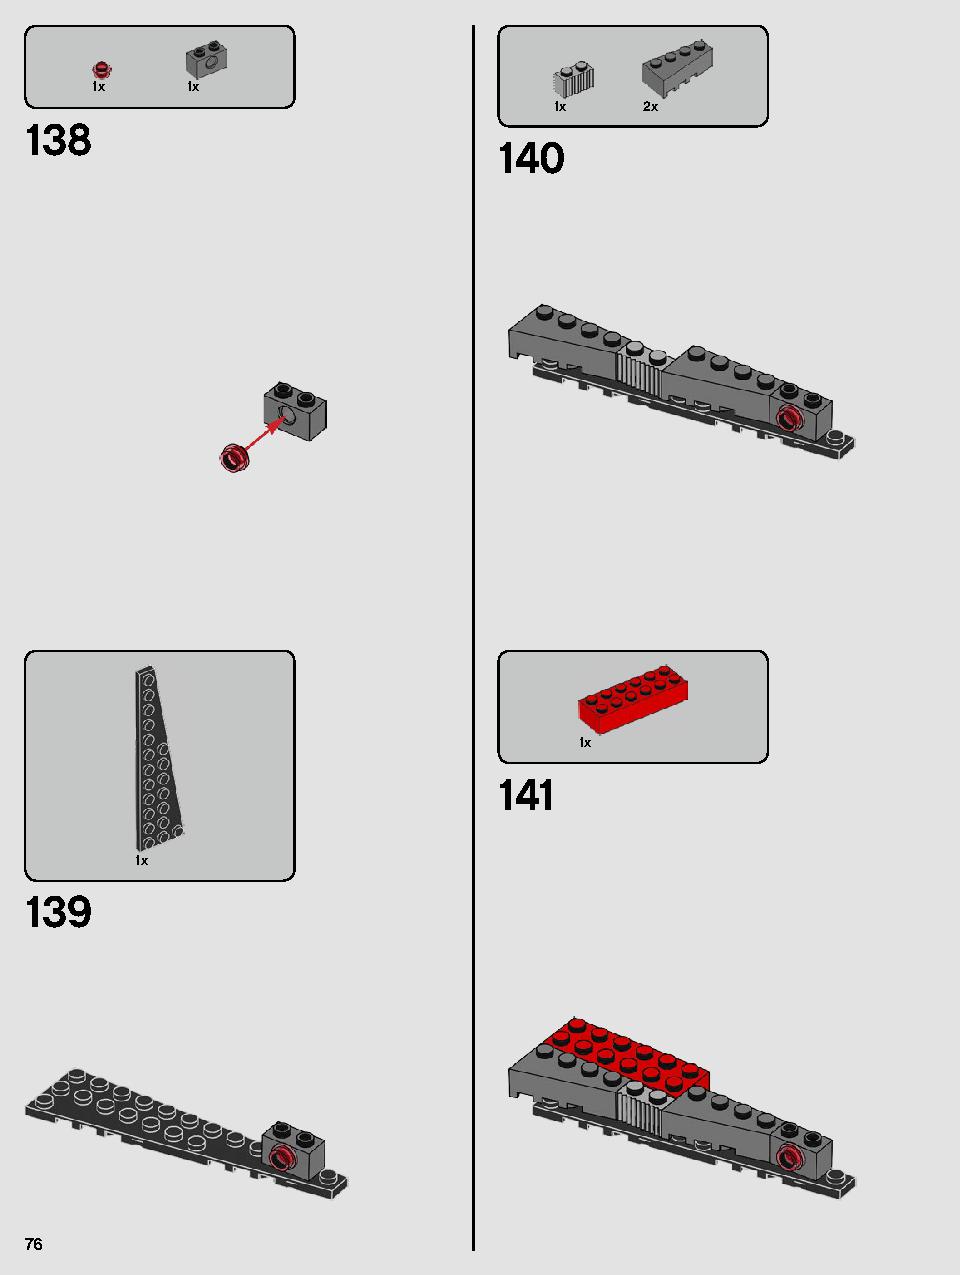 스타워즈 카일로 렌의 셔틀™ 75256 레고 세트 제품정보 레고 조립설명서 76 page